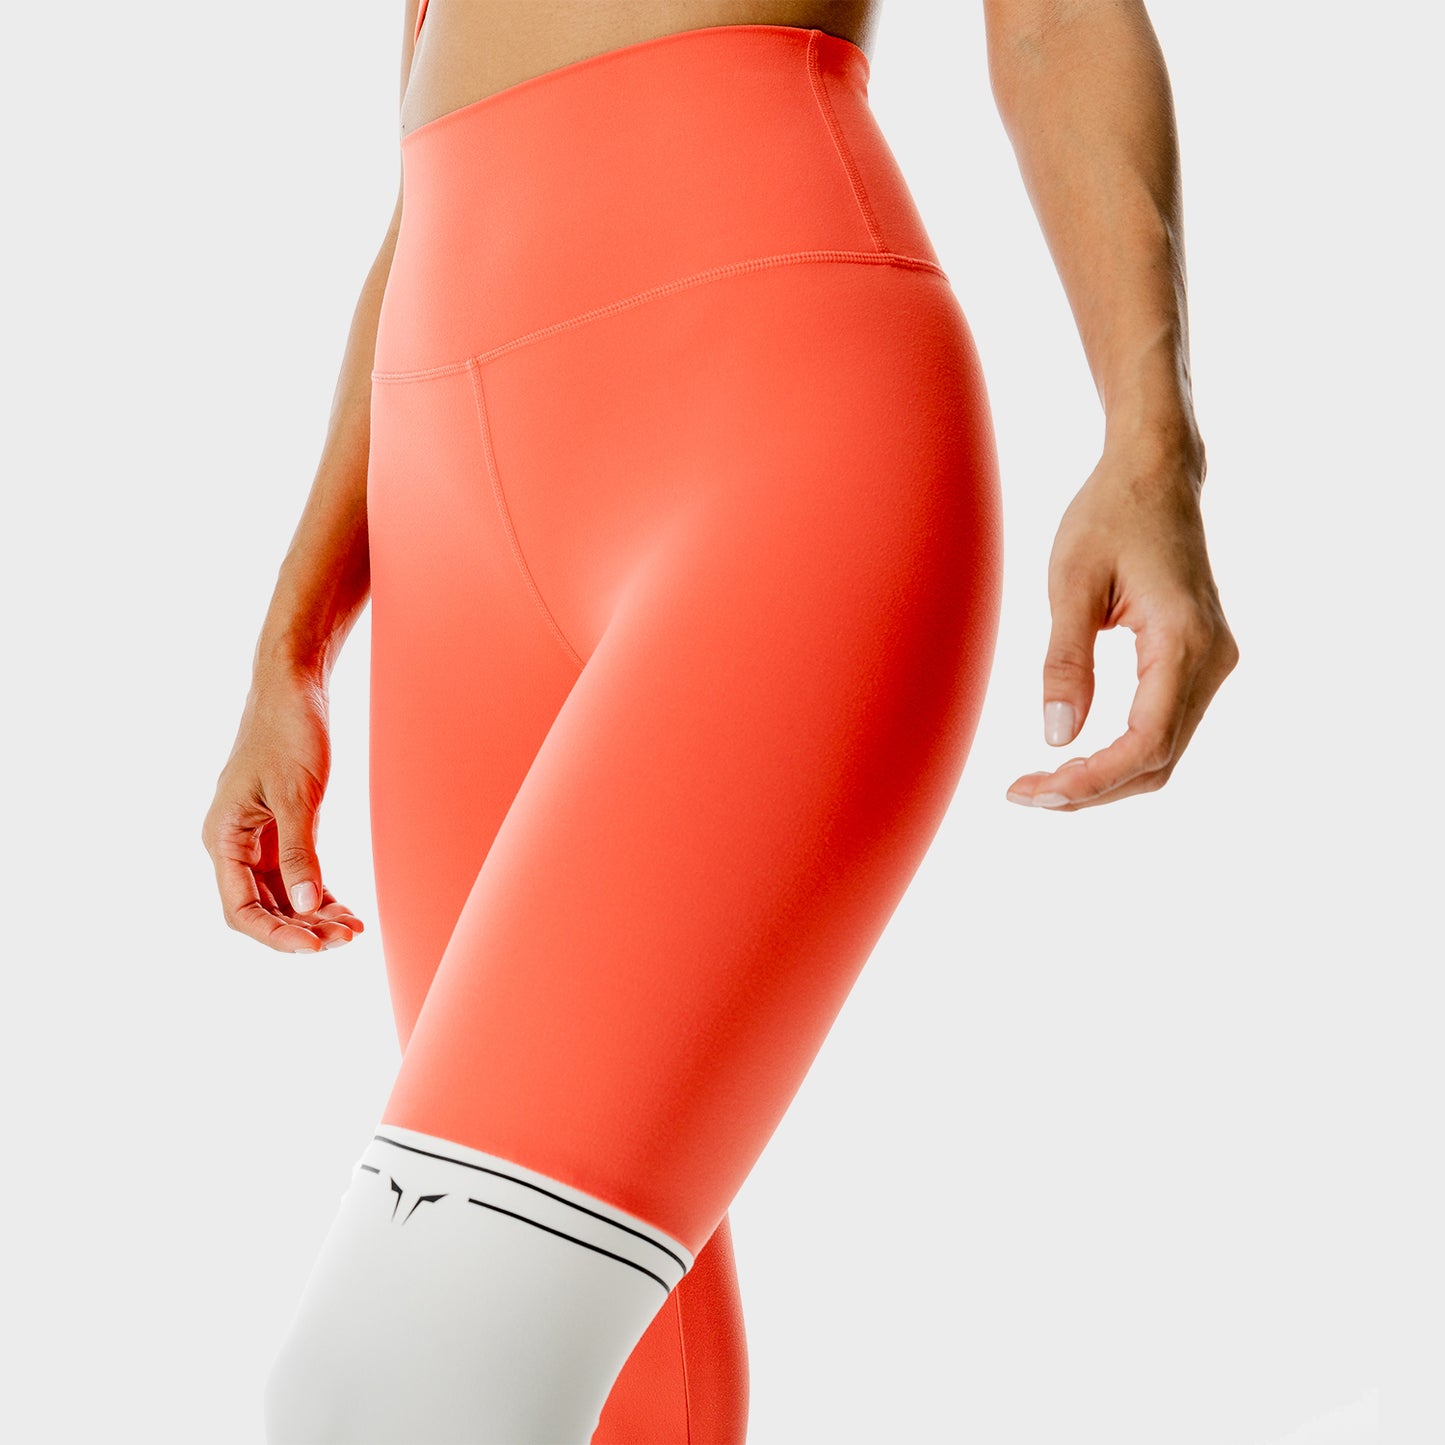 SQUATWOL-workout-clothes-lab-360-colour-block-leggings-orange-gym-leggings-for-women